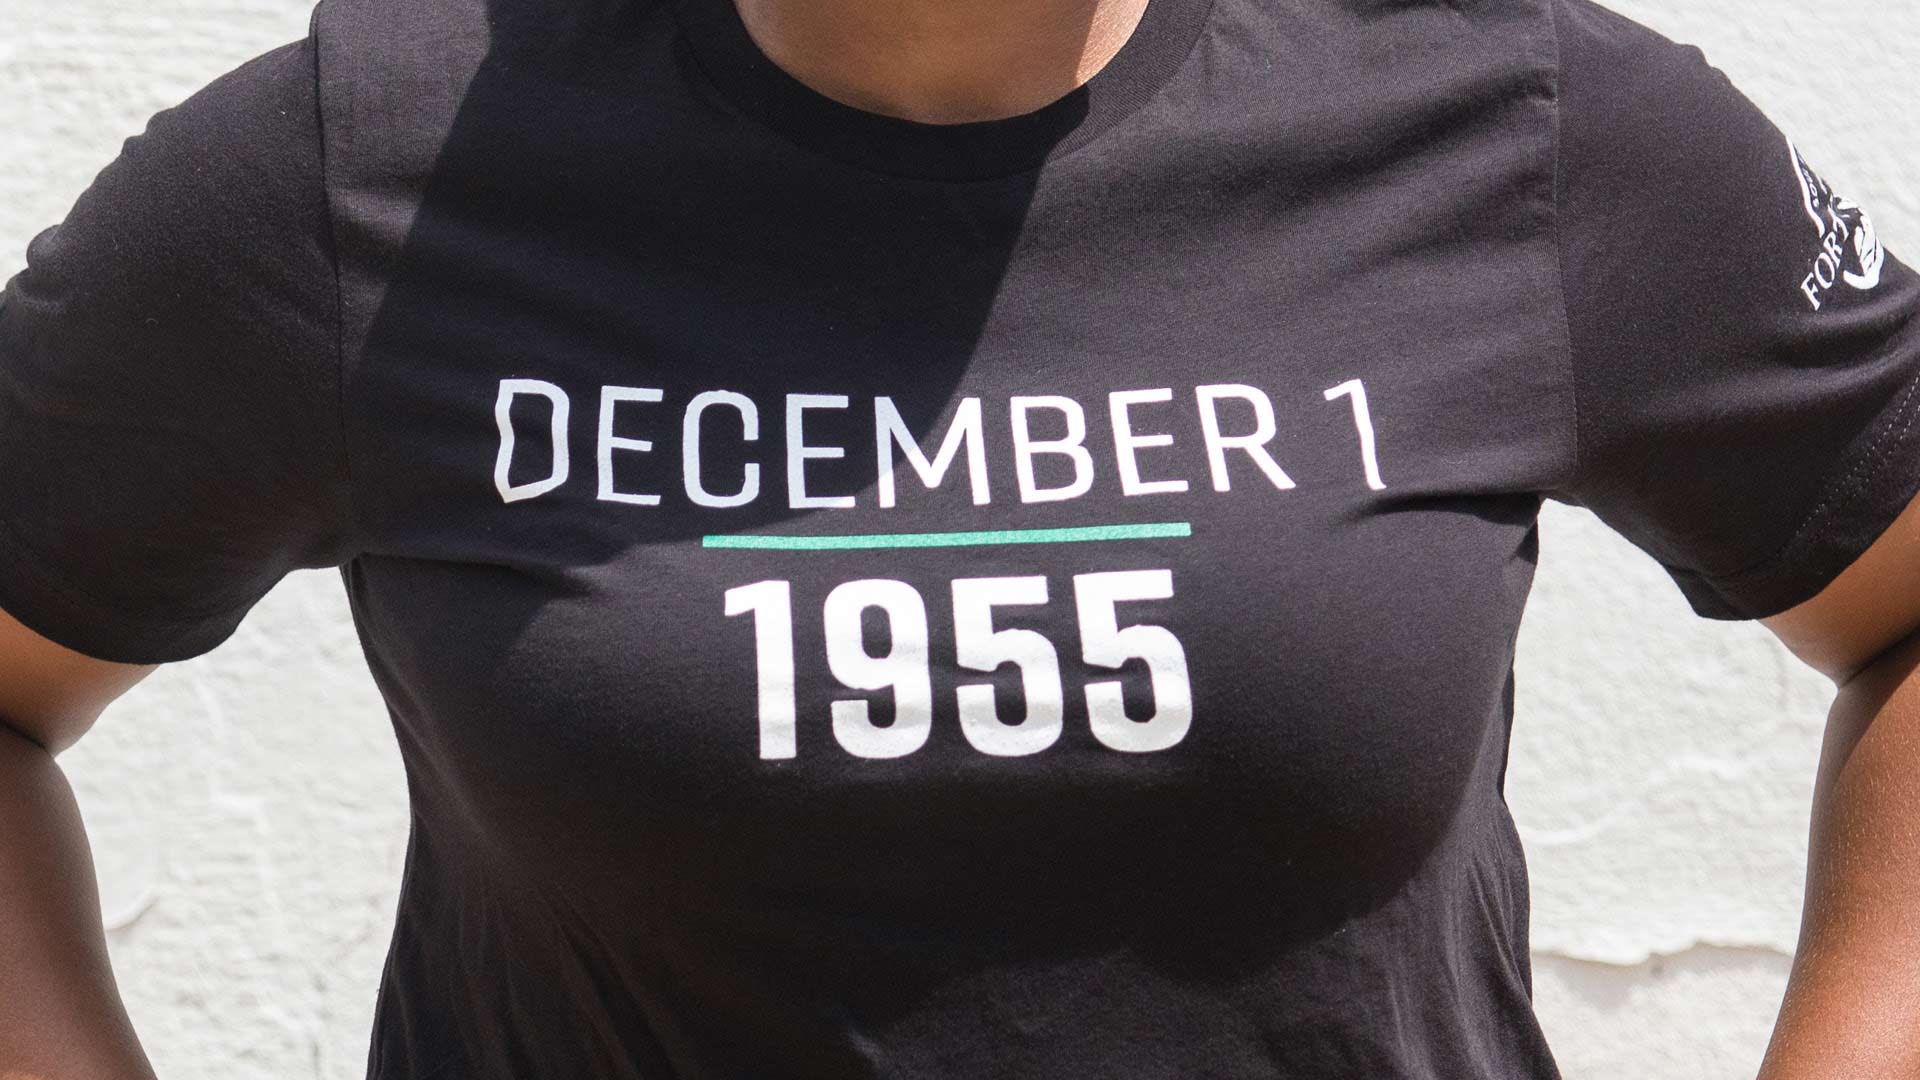 40Acres-December-1-1955-T-Shirt.jpg